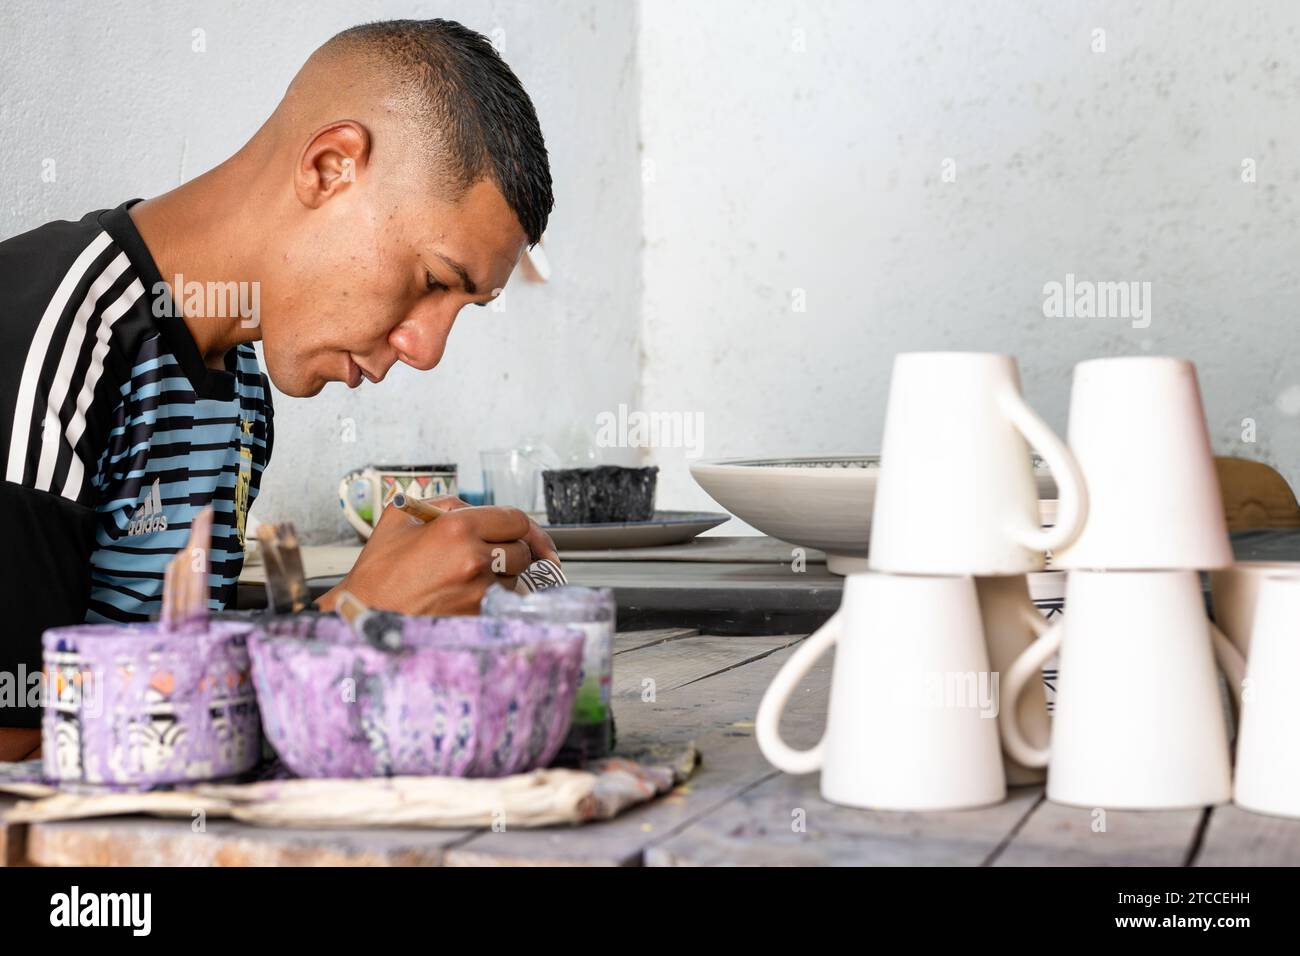 Fes, Marokko: Marokkanische Handwerker malen Keramikbecher und -Tassen in einer Werkstatt in Fes Medina. Stockfoto